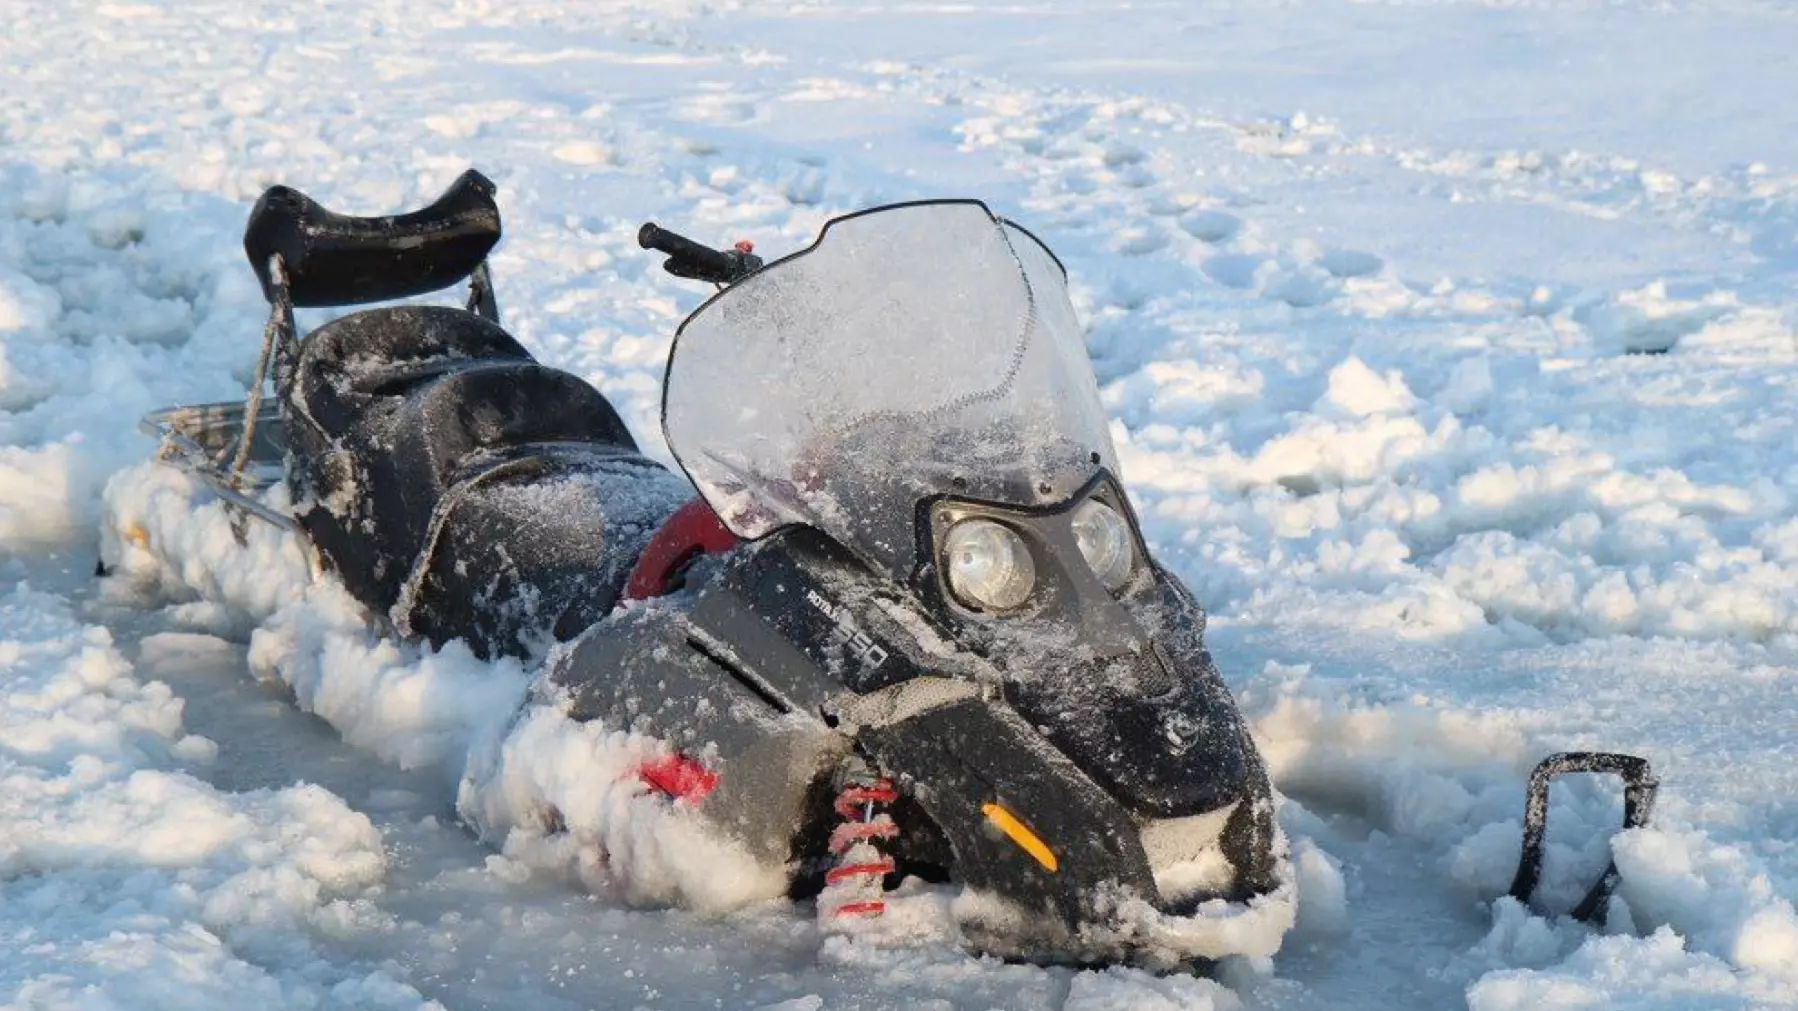 На Красноярском водохранилище пара успела выбраться с уходящего под лед снегоход